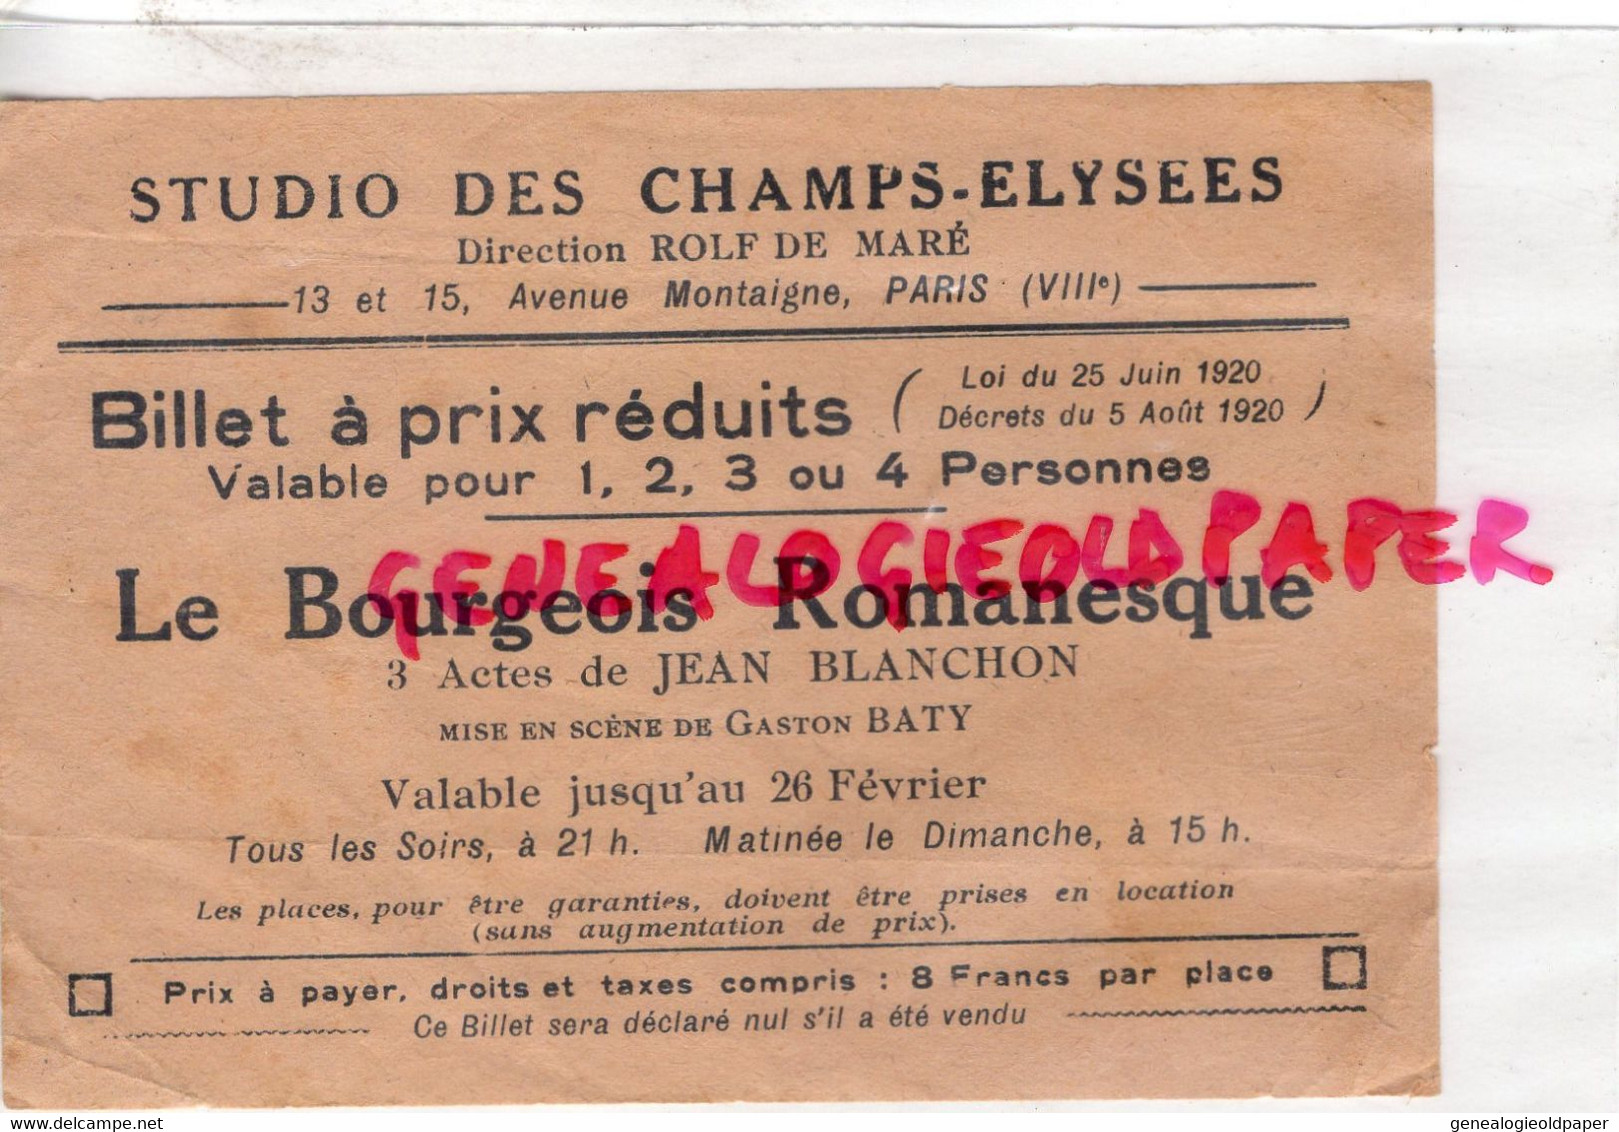 75- PARIS- STUDIO CHAMPS ELYSEES- BILLET LE BOURGEOIS ROMANESQUE-JEAN BLANCHON-GASTON BATY-1920-ROLF DE MARE-MONTAIGNE - Tickets - Vouchers